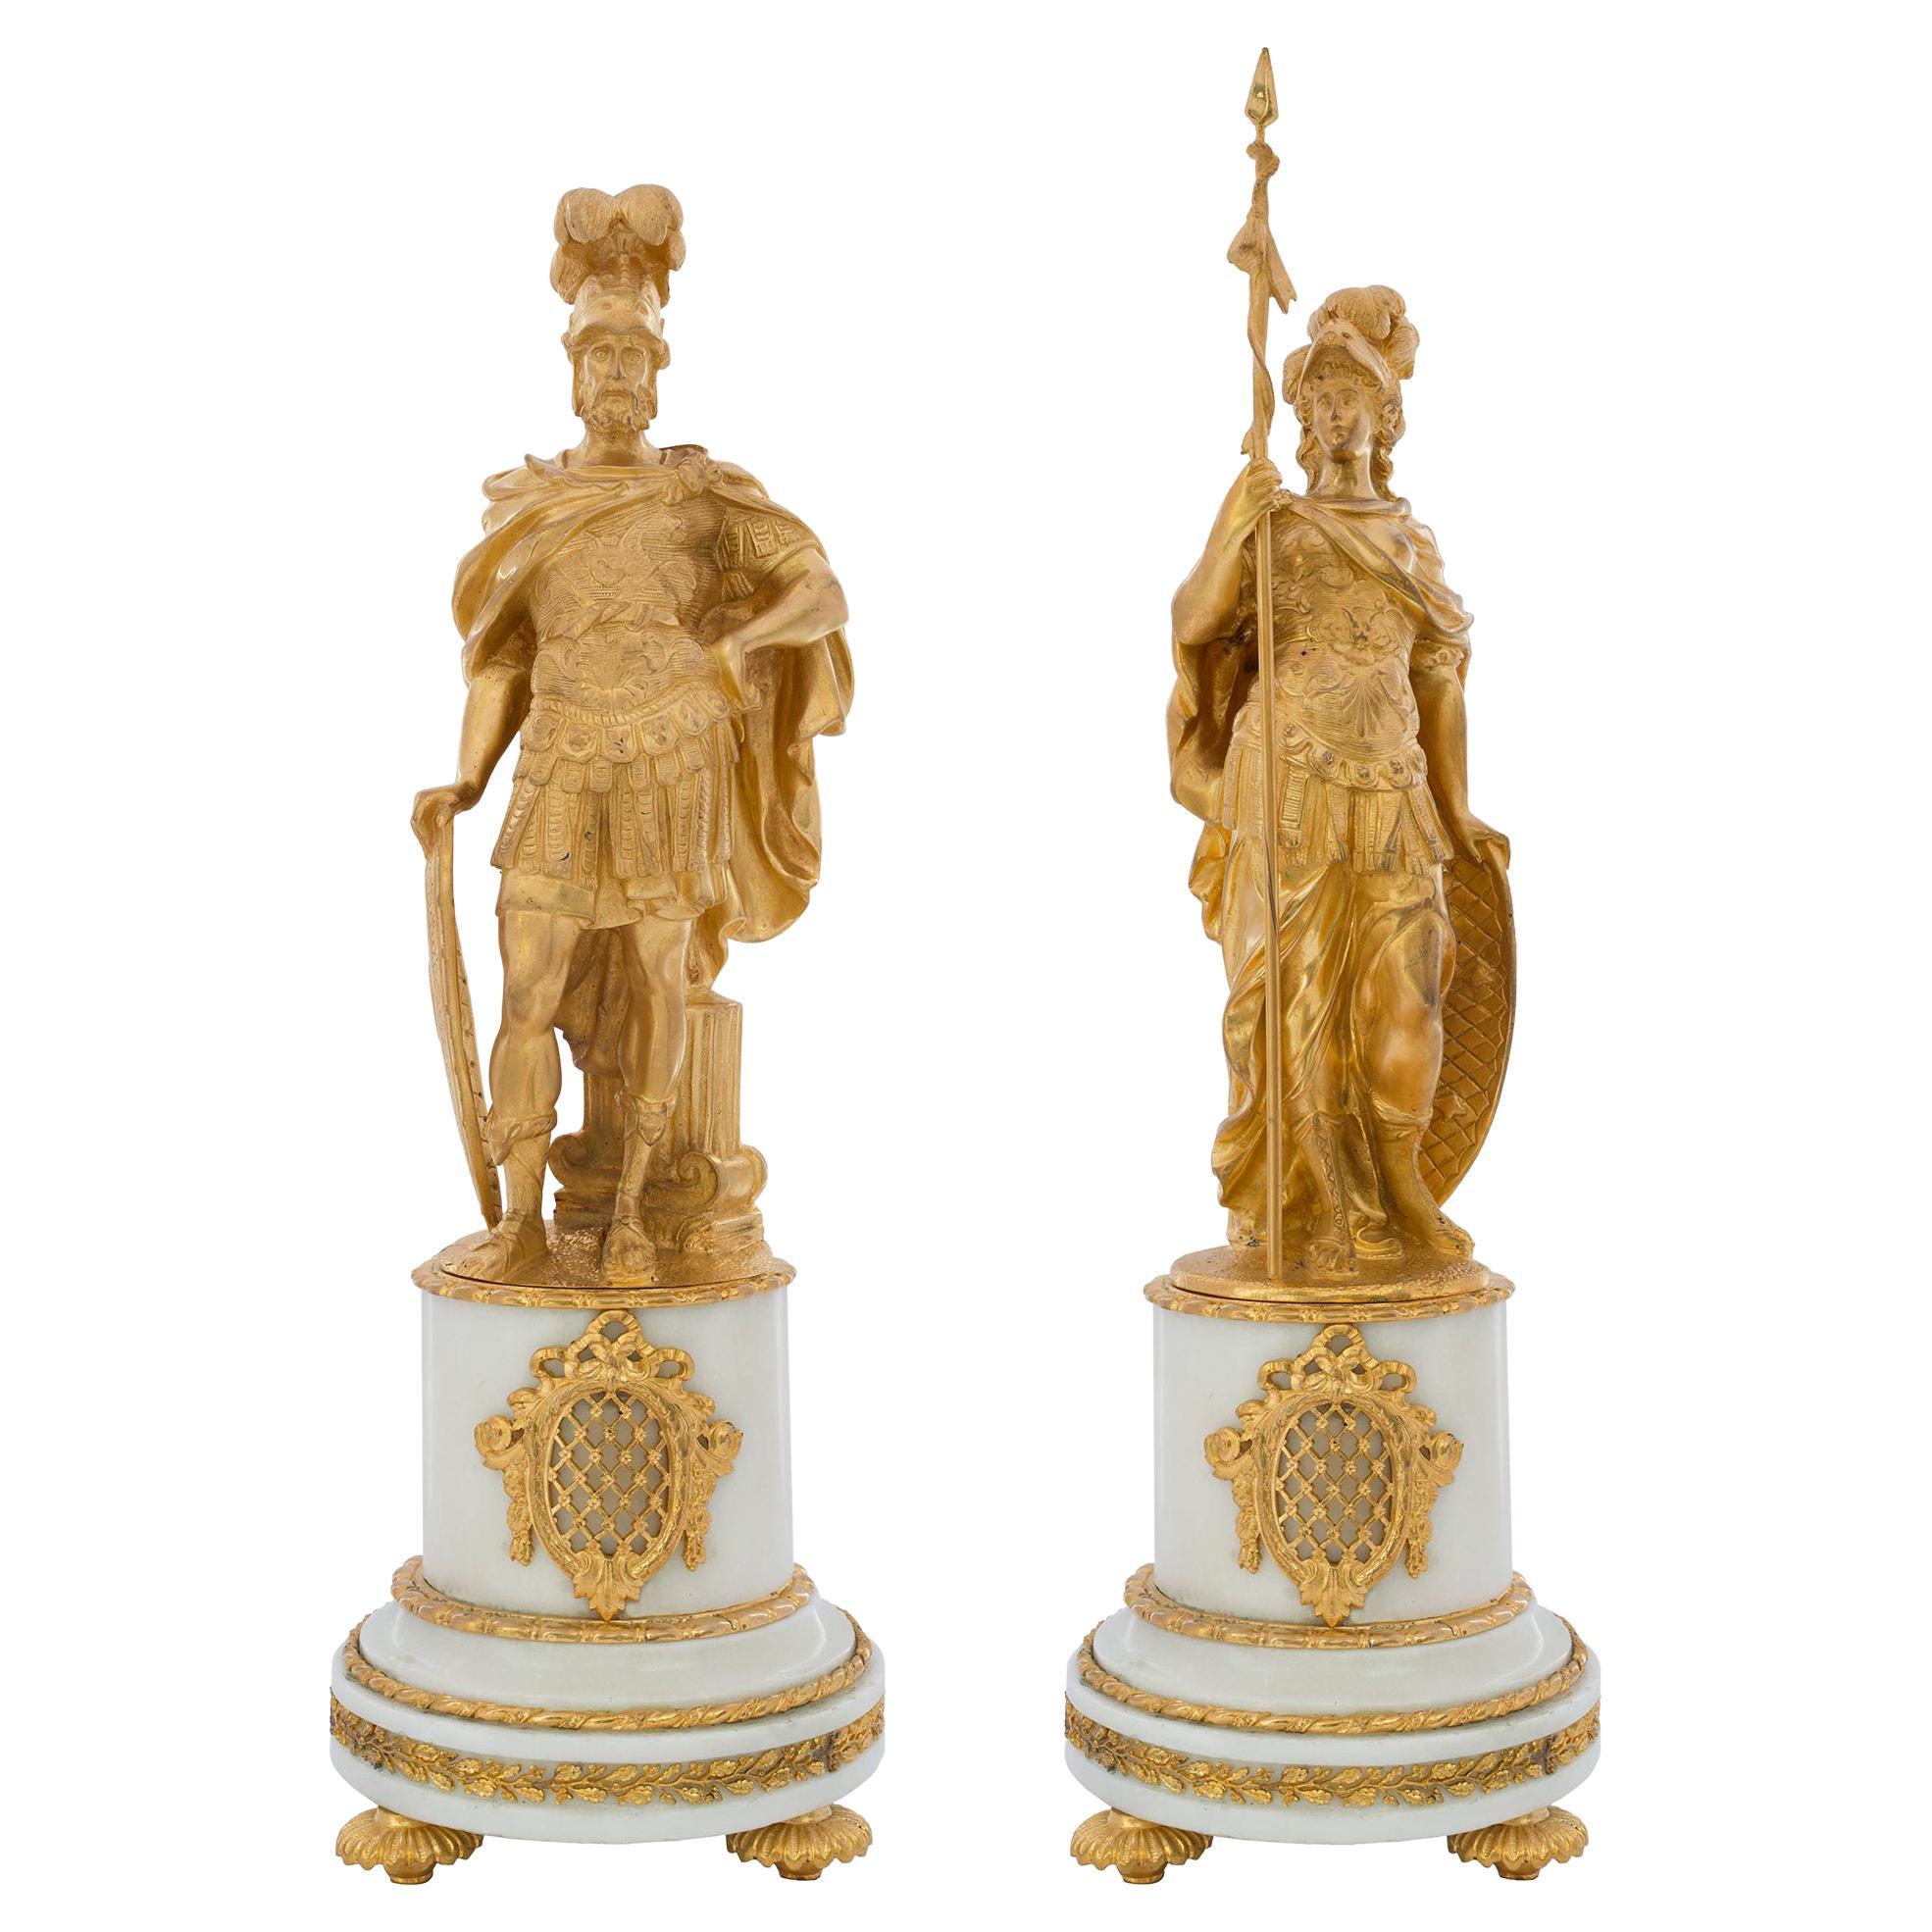 Paire de statues françaises de style Louis XVI du 19ème siècle représentant Mars et Minerve